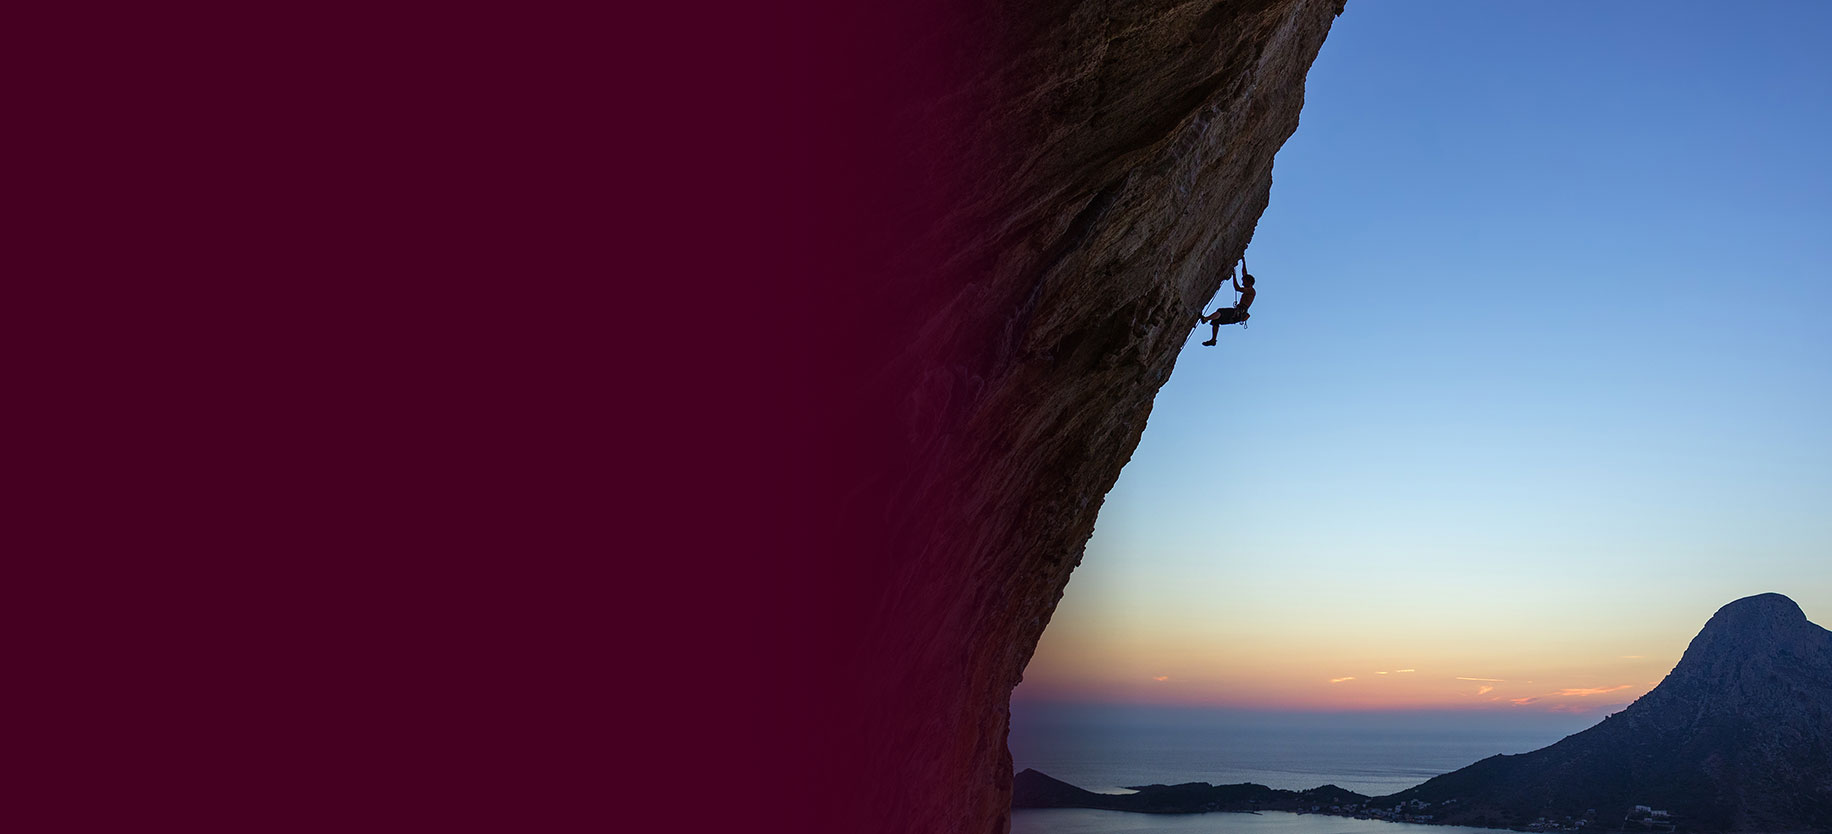 A person climbing a cliff